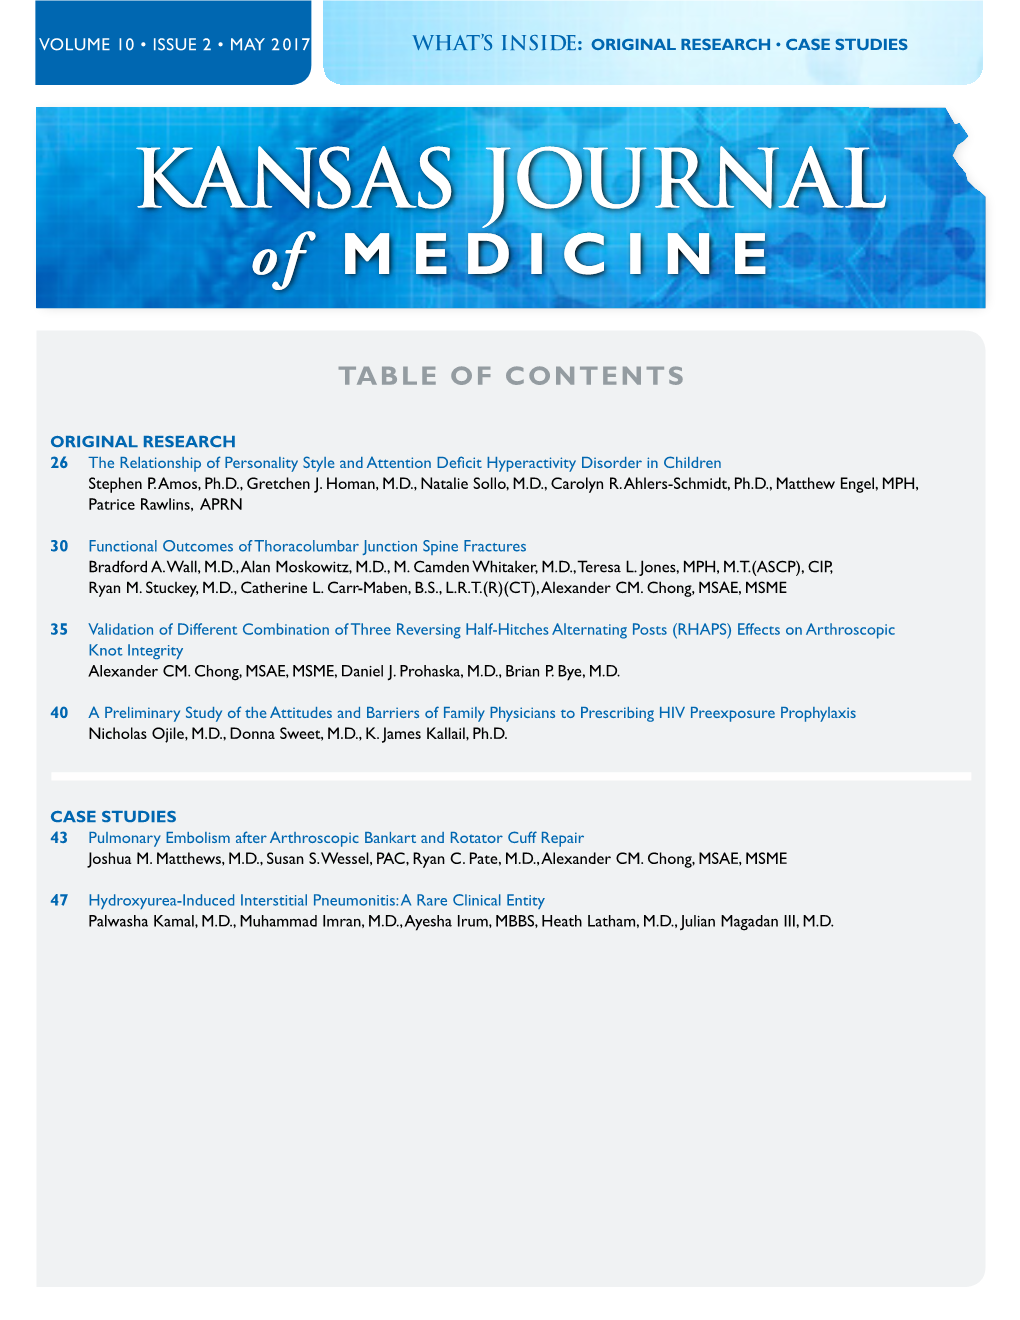 Kansas Journal of Medicine, Volume 10 Issue 2